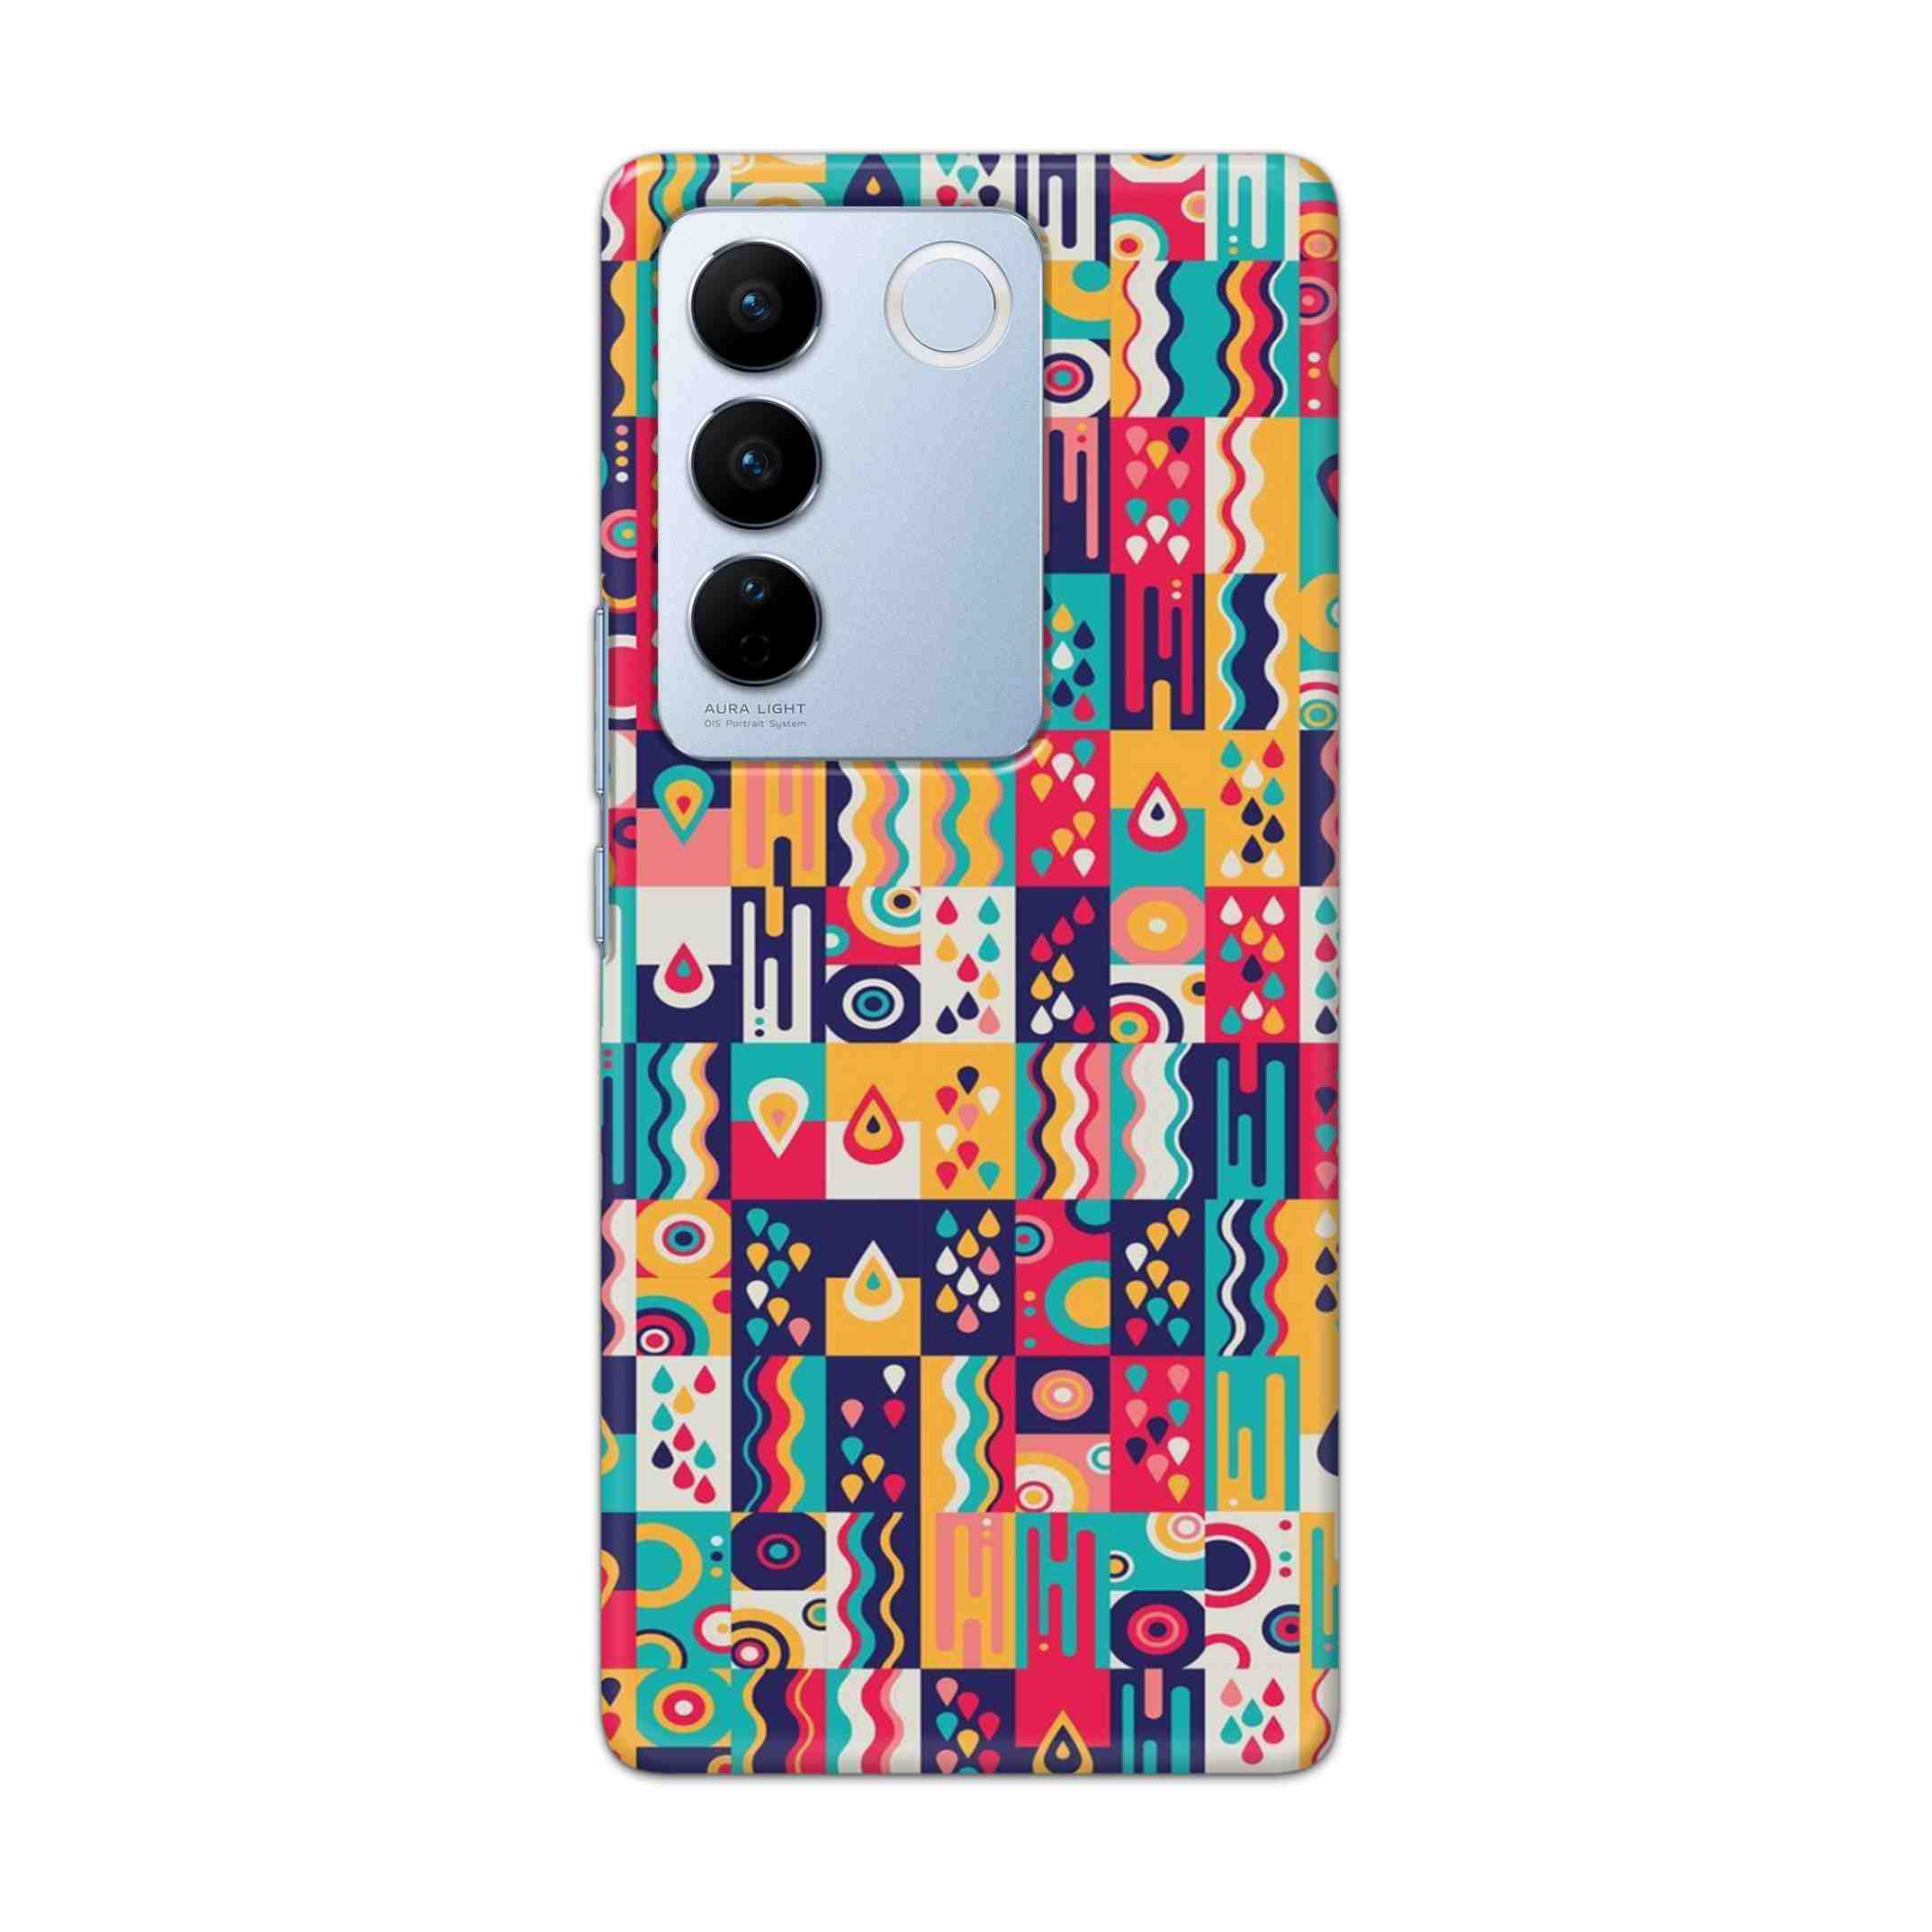 Buy Art Hard Back Mobile Phone Case Cover For Vivo V27 Online